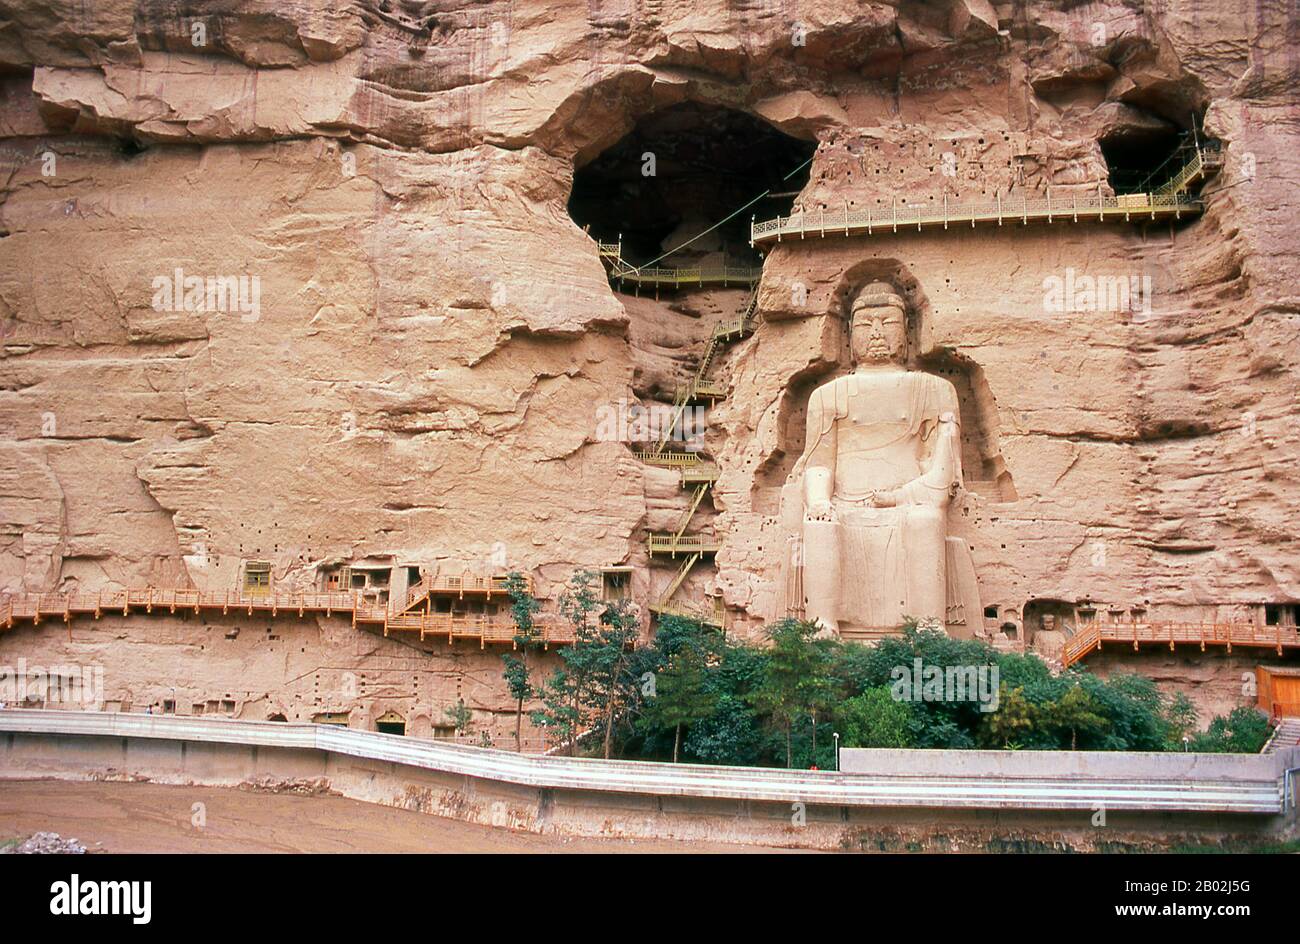 Binglingsi Shiku (Mille grottes de Bouddha) est une collection de grottes et de grottes dans un canyon inaccessible près de la rivière jaune à environ 80 km en amont de Lanzhou. L'isolement même du site a protégé et préservé Binglingsi, notamment de marauder les gardes rouges pendant la Révolution culturelle (1966 - 76). Les premières grottes bouddhistes de Binglingsi datent de la dynastie des Jin de l'est (c. 317 - 420 ce), et la construction a continué pendant bien plus de mille ans tout au long des époques de Tang, Song, Ming et Qing. Les grottes de Bingling ont souvent été parrainées par des patrons riches investissant une partie de leur R de soie Banque D'Images